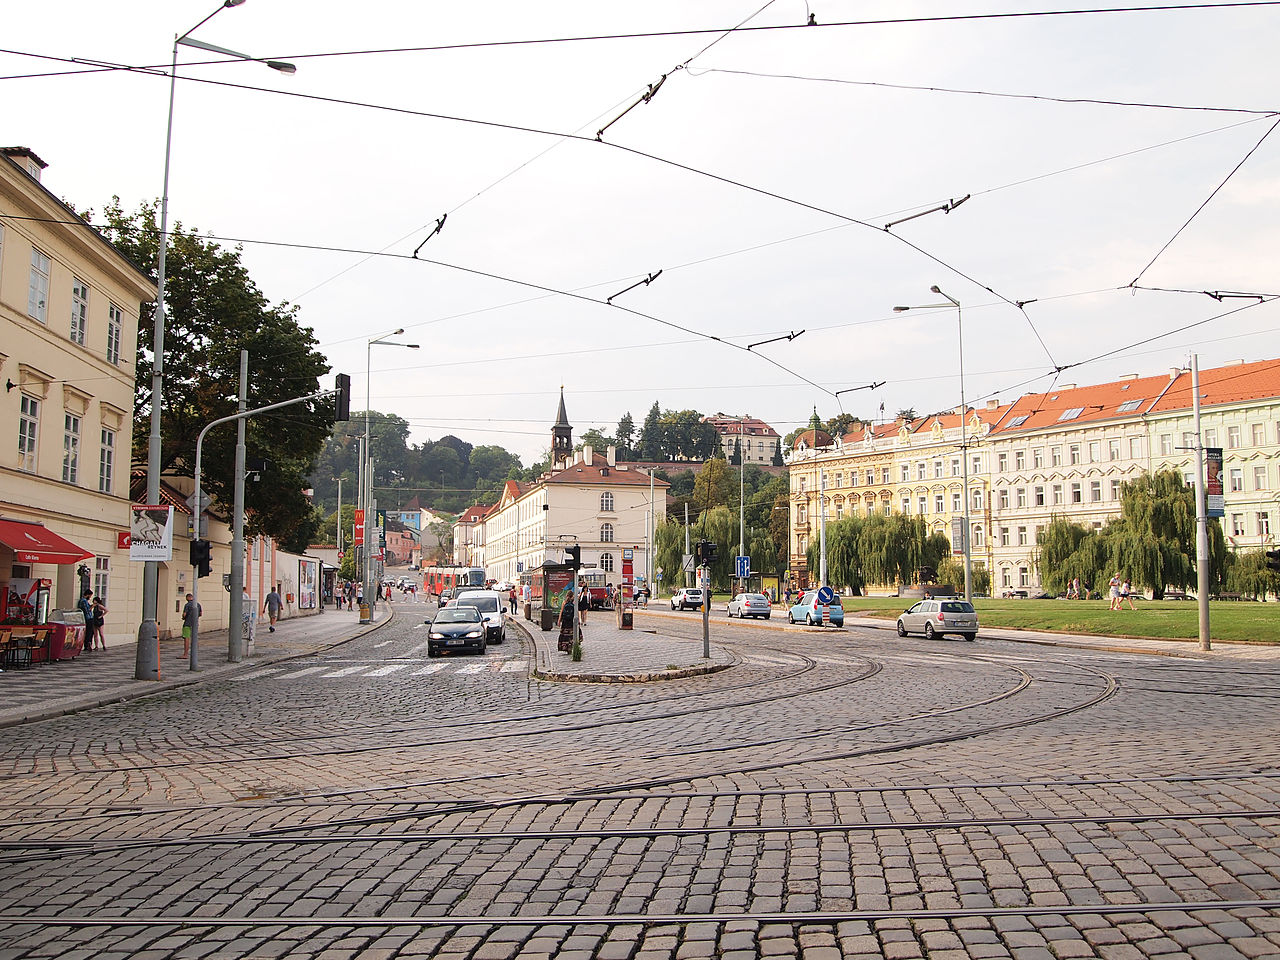 Tramvajová křižovatka v Praze na Klárově. Autor: Tiia Monto, CC BY-SA 4.0, https://commons.wikimedia.org/w/index.php?curid=34820702